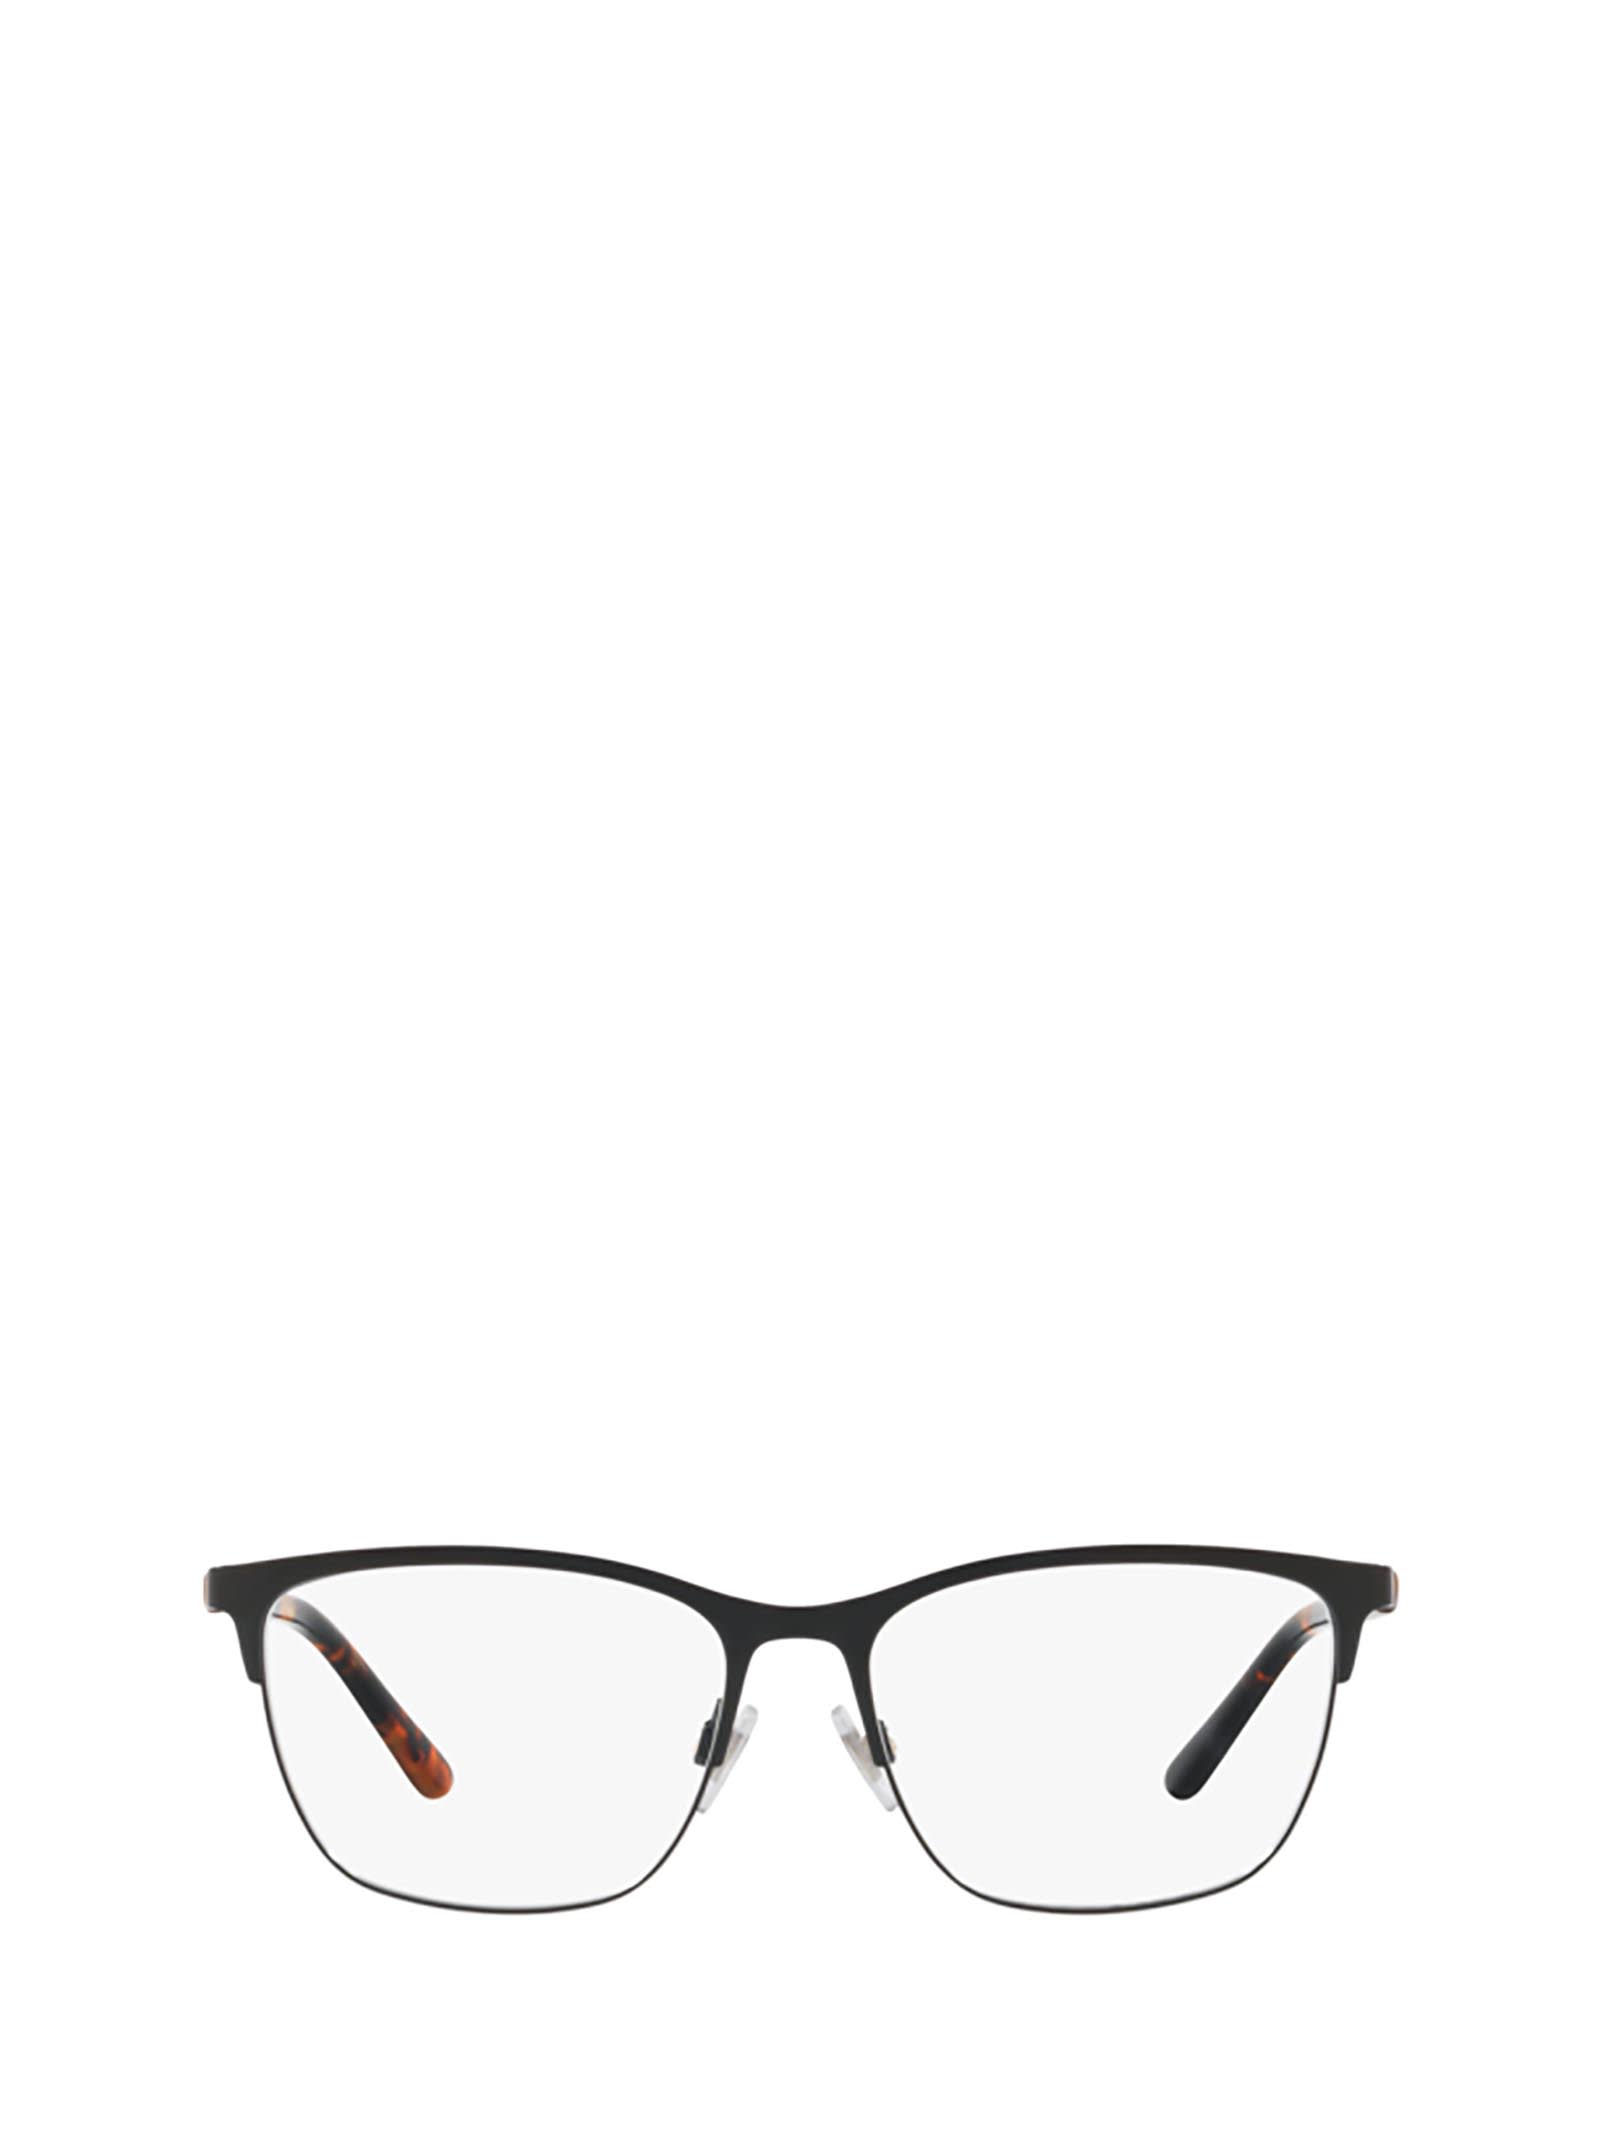 Polo Ralph Lauren Ph1184 9003 Glasses